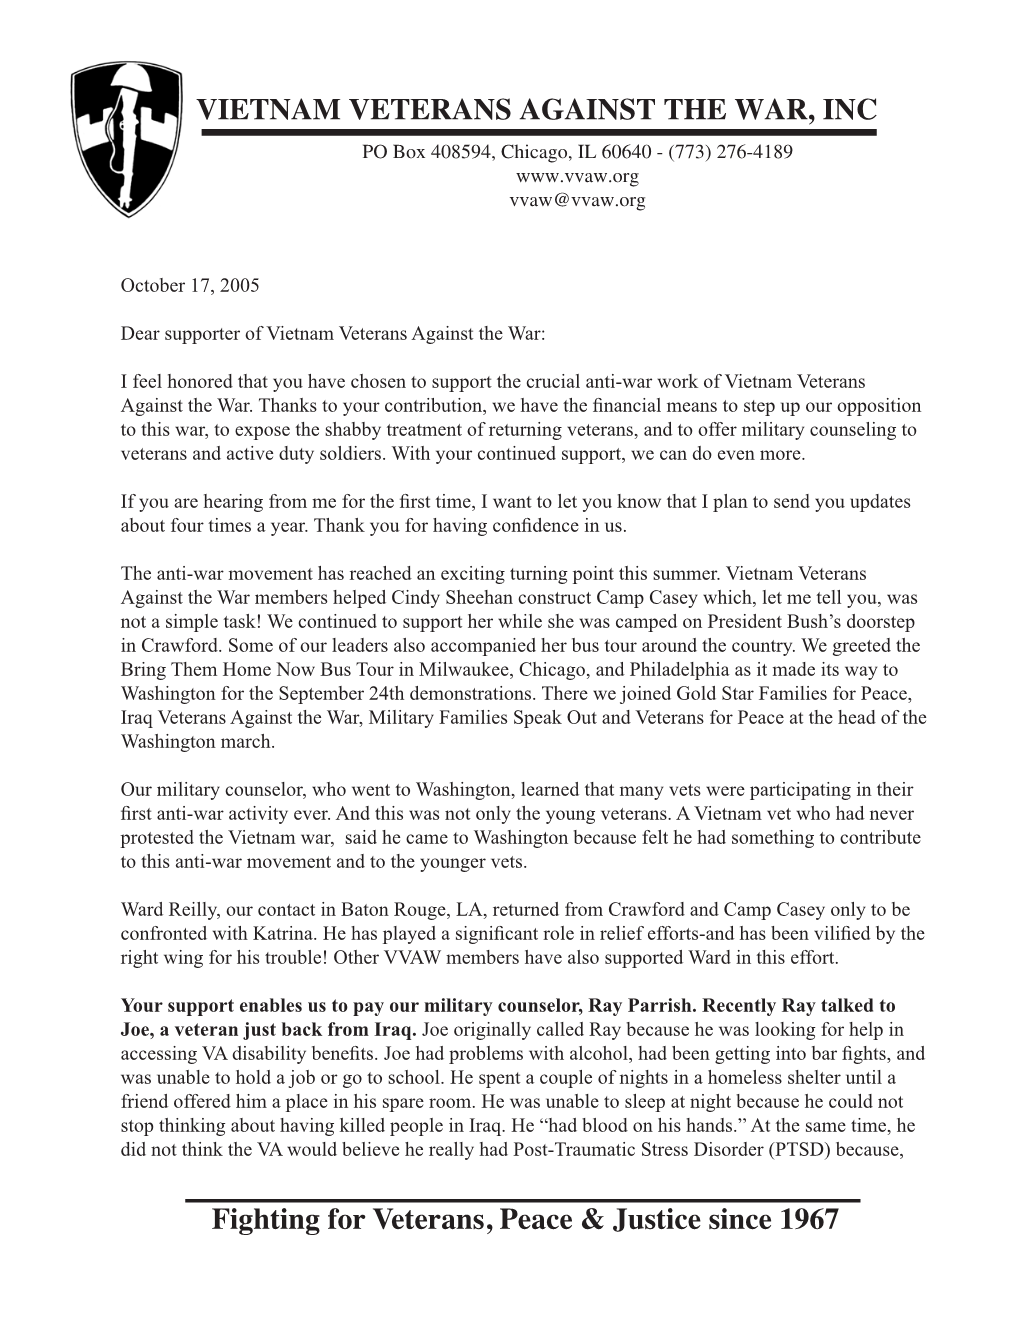 VVAW's October 2005 Letter